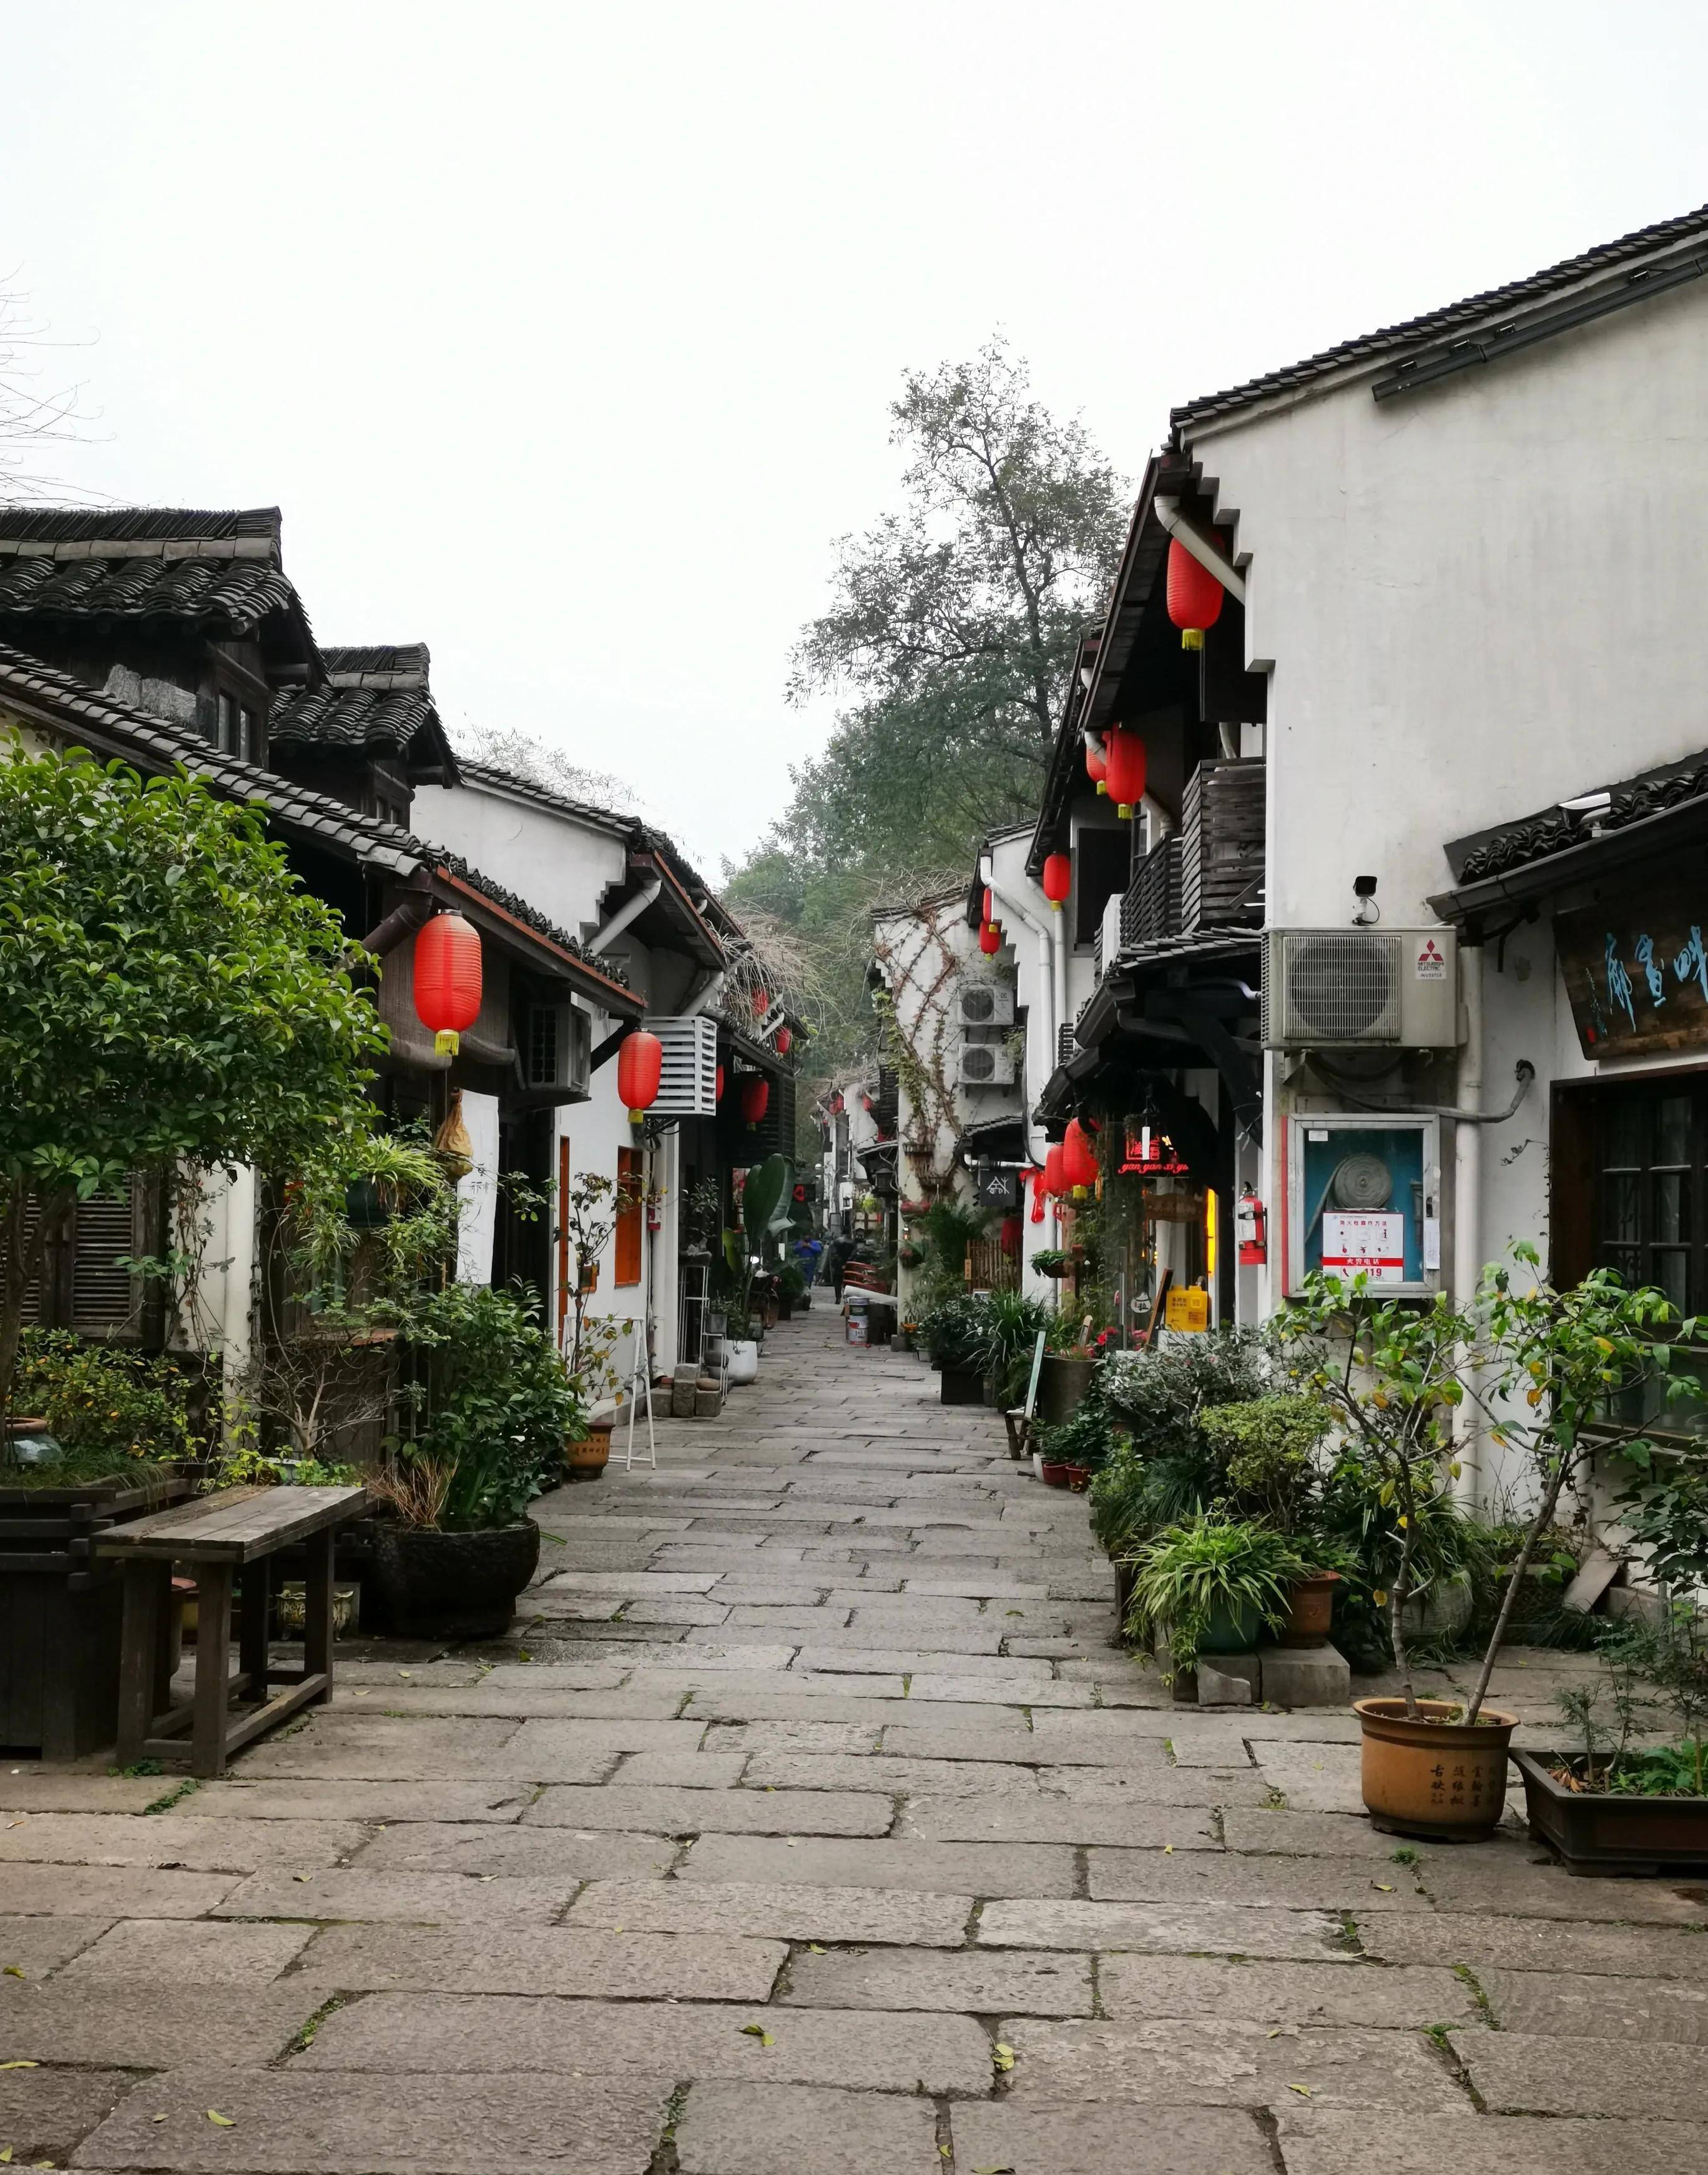 杭州小河直街历史文化街区,带给人们不一样的生活和风情!